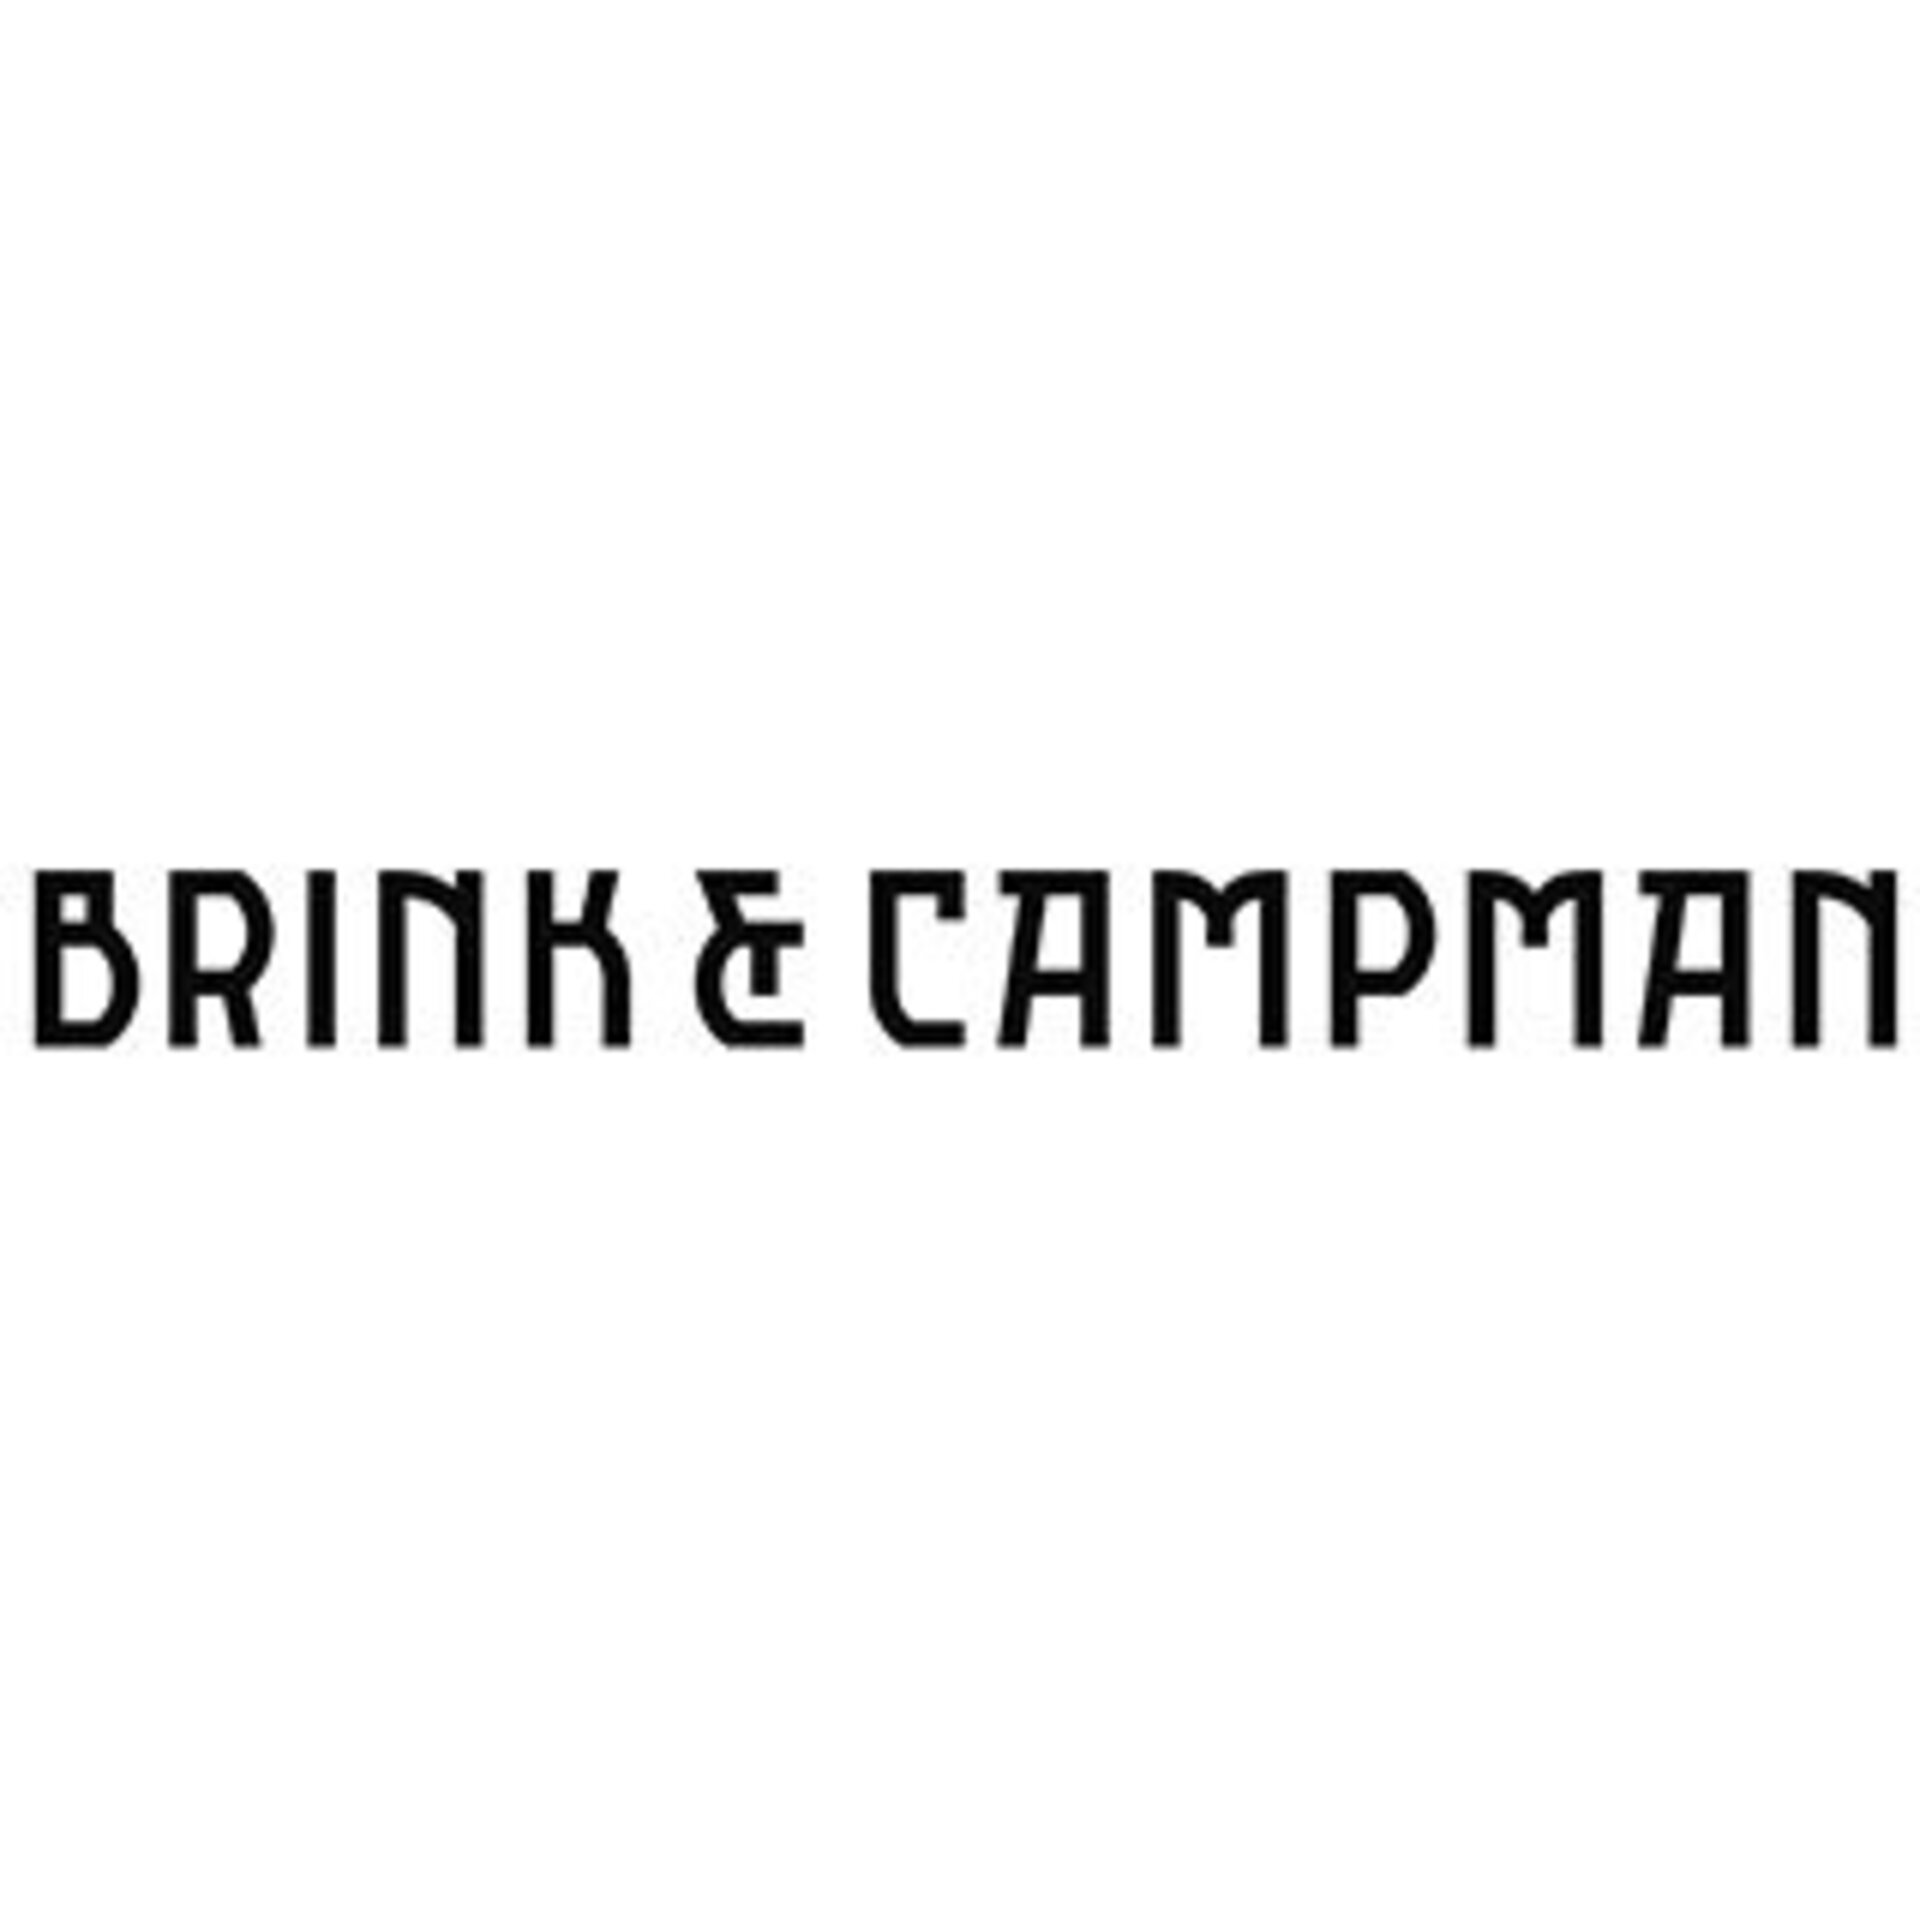 Brink & Campman Teppiche bei Möbel Inhofer